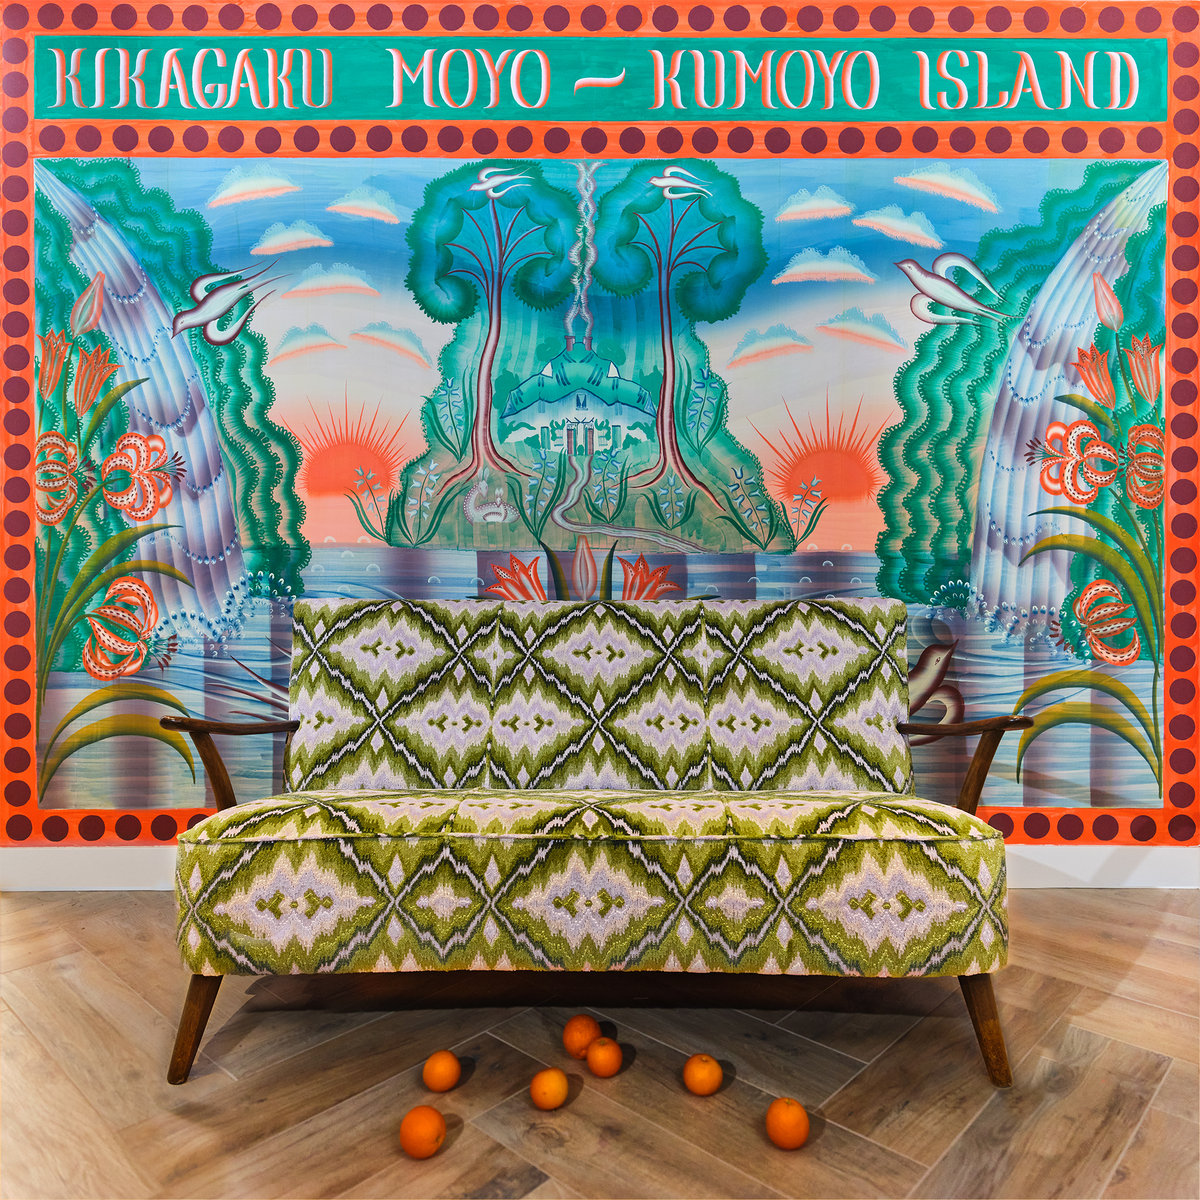 Kumoyo Island | Kikagaku Moyo/幾何学模様